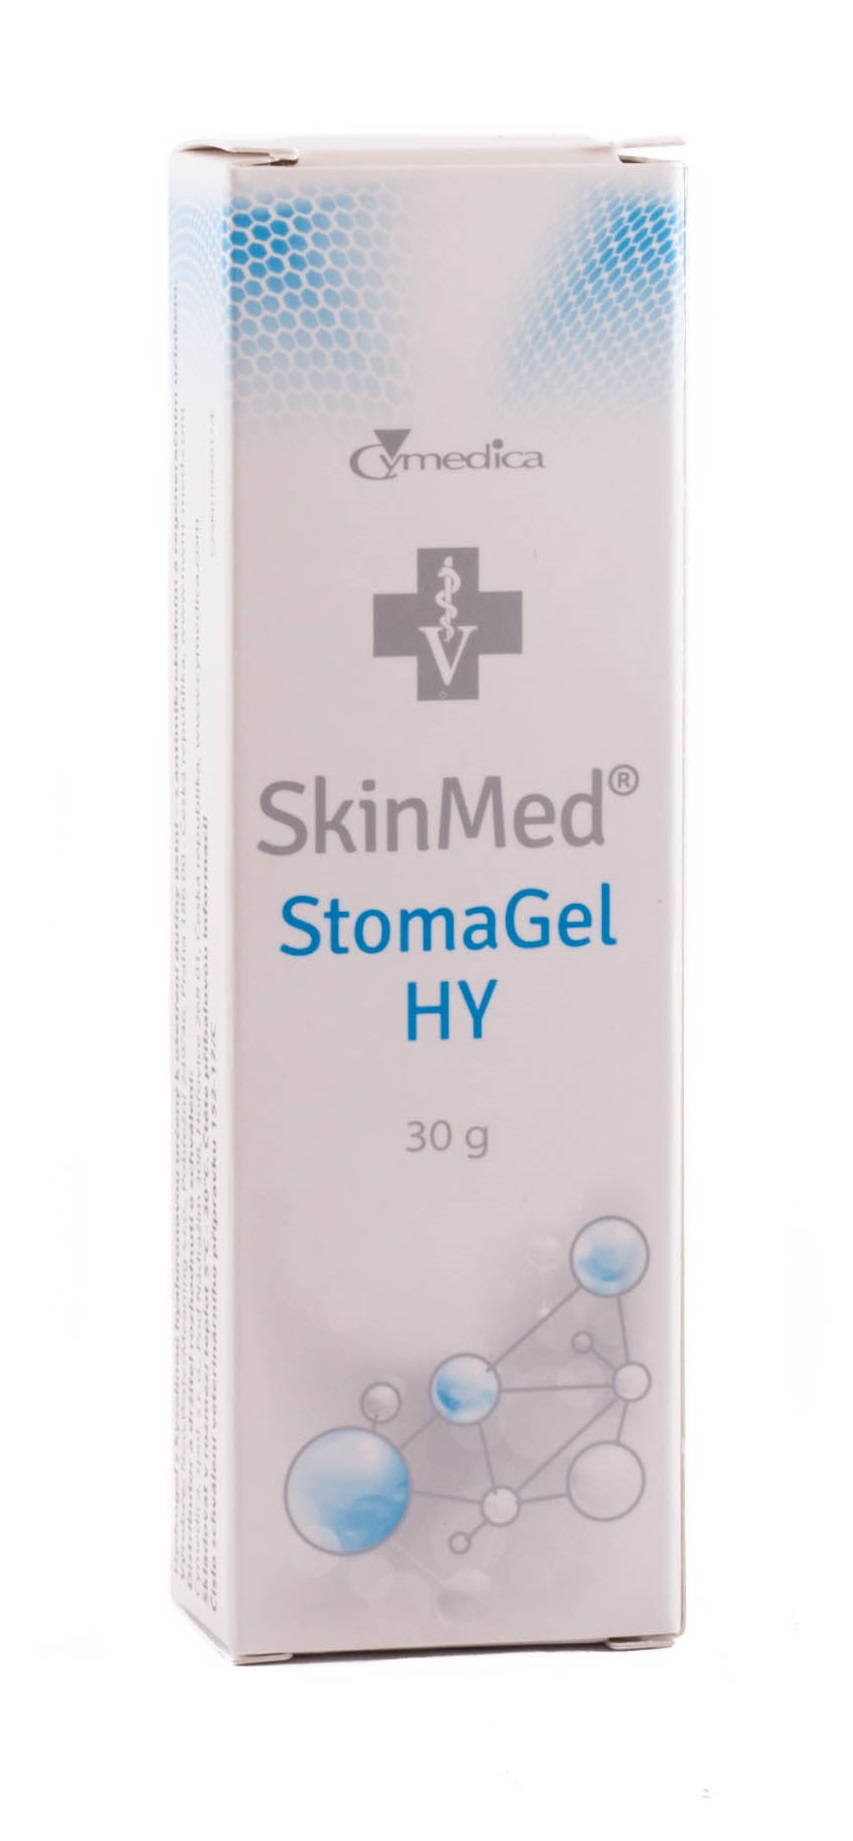 SkinMed StomaGel HY 30 g